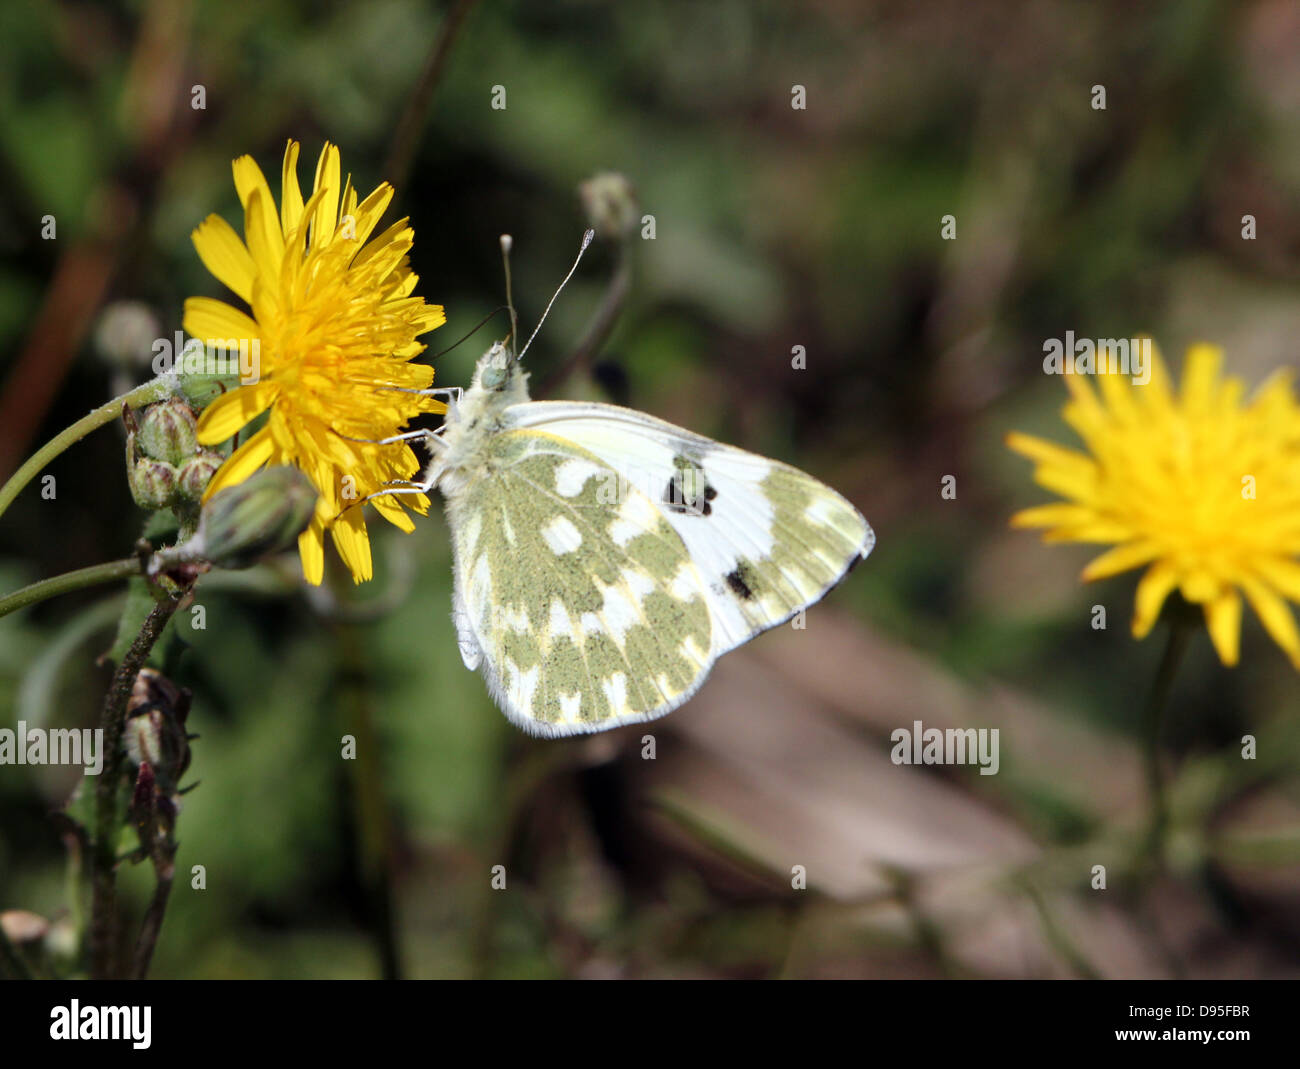 Dettagliato close-up imago macro di una vasca da bagno farfalla bianca (Pontia daplidice) in posa su di un fiore giallo Foto Stock